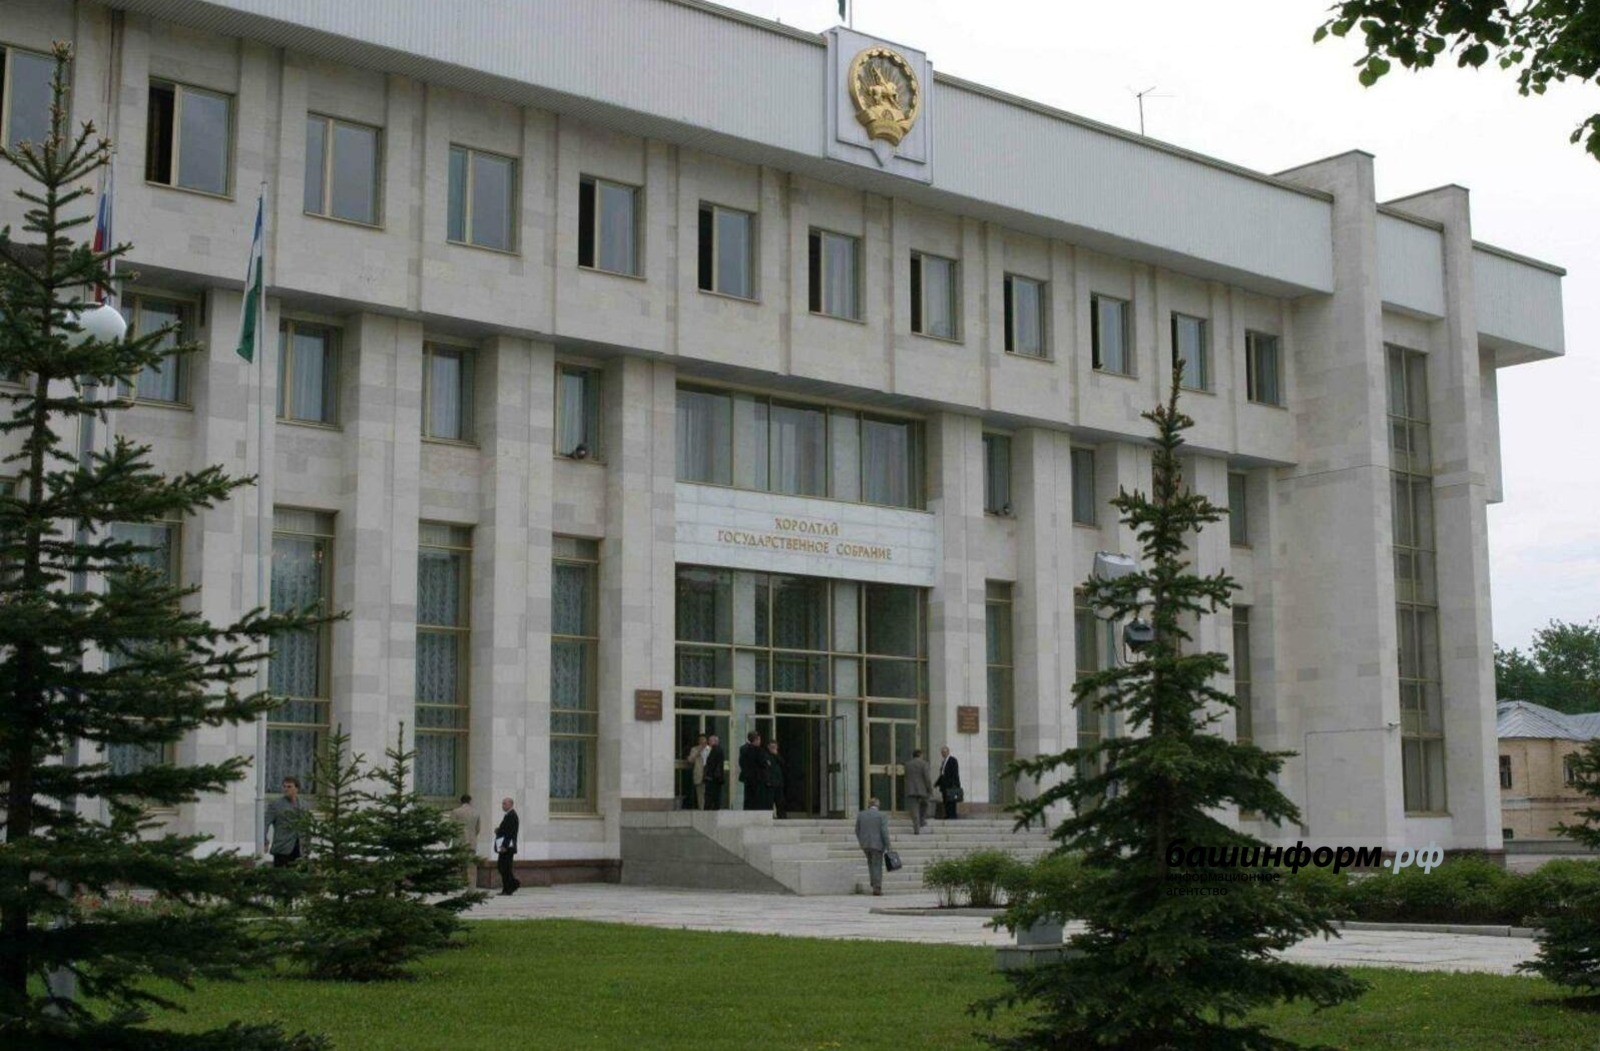 Депутаты Башкирии предлагают ограничить работу лжеломбардов на федеральном уровне